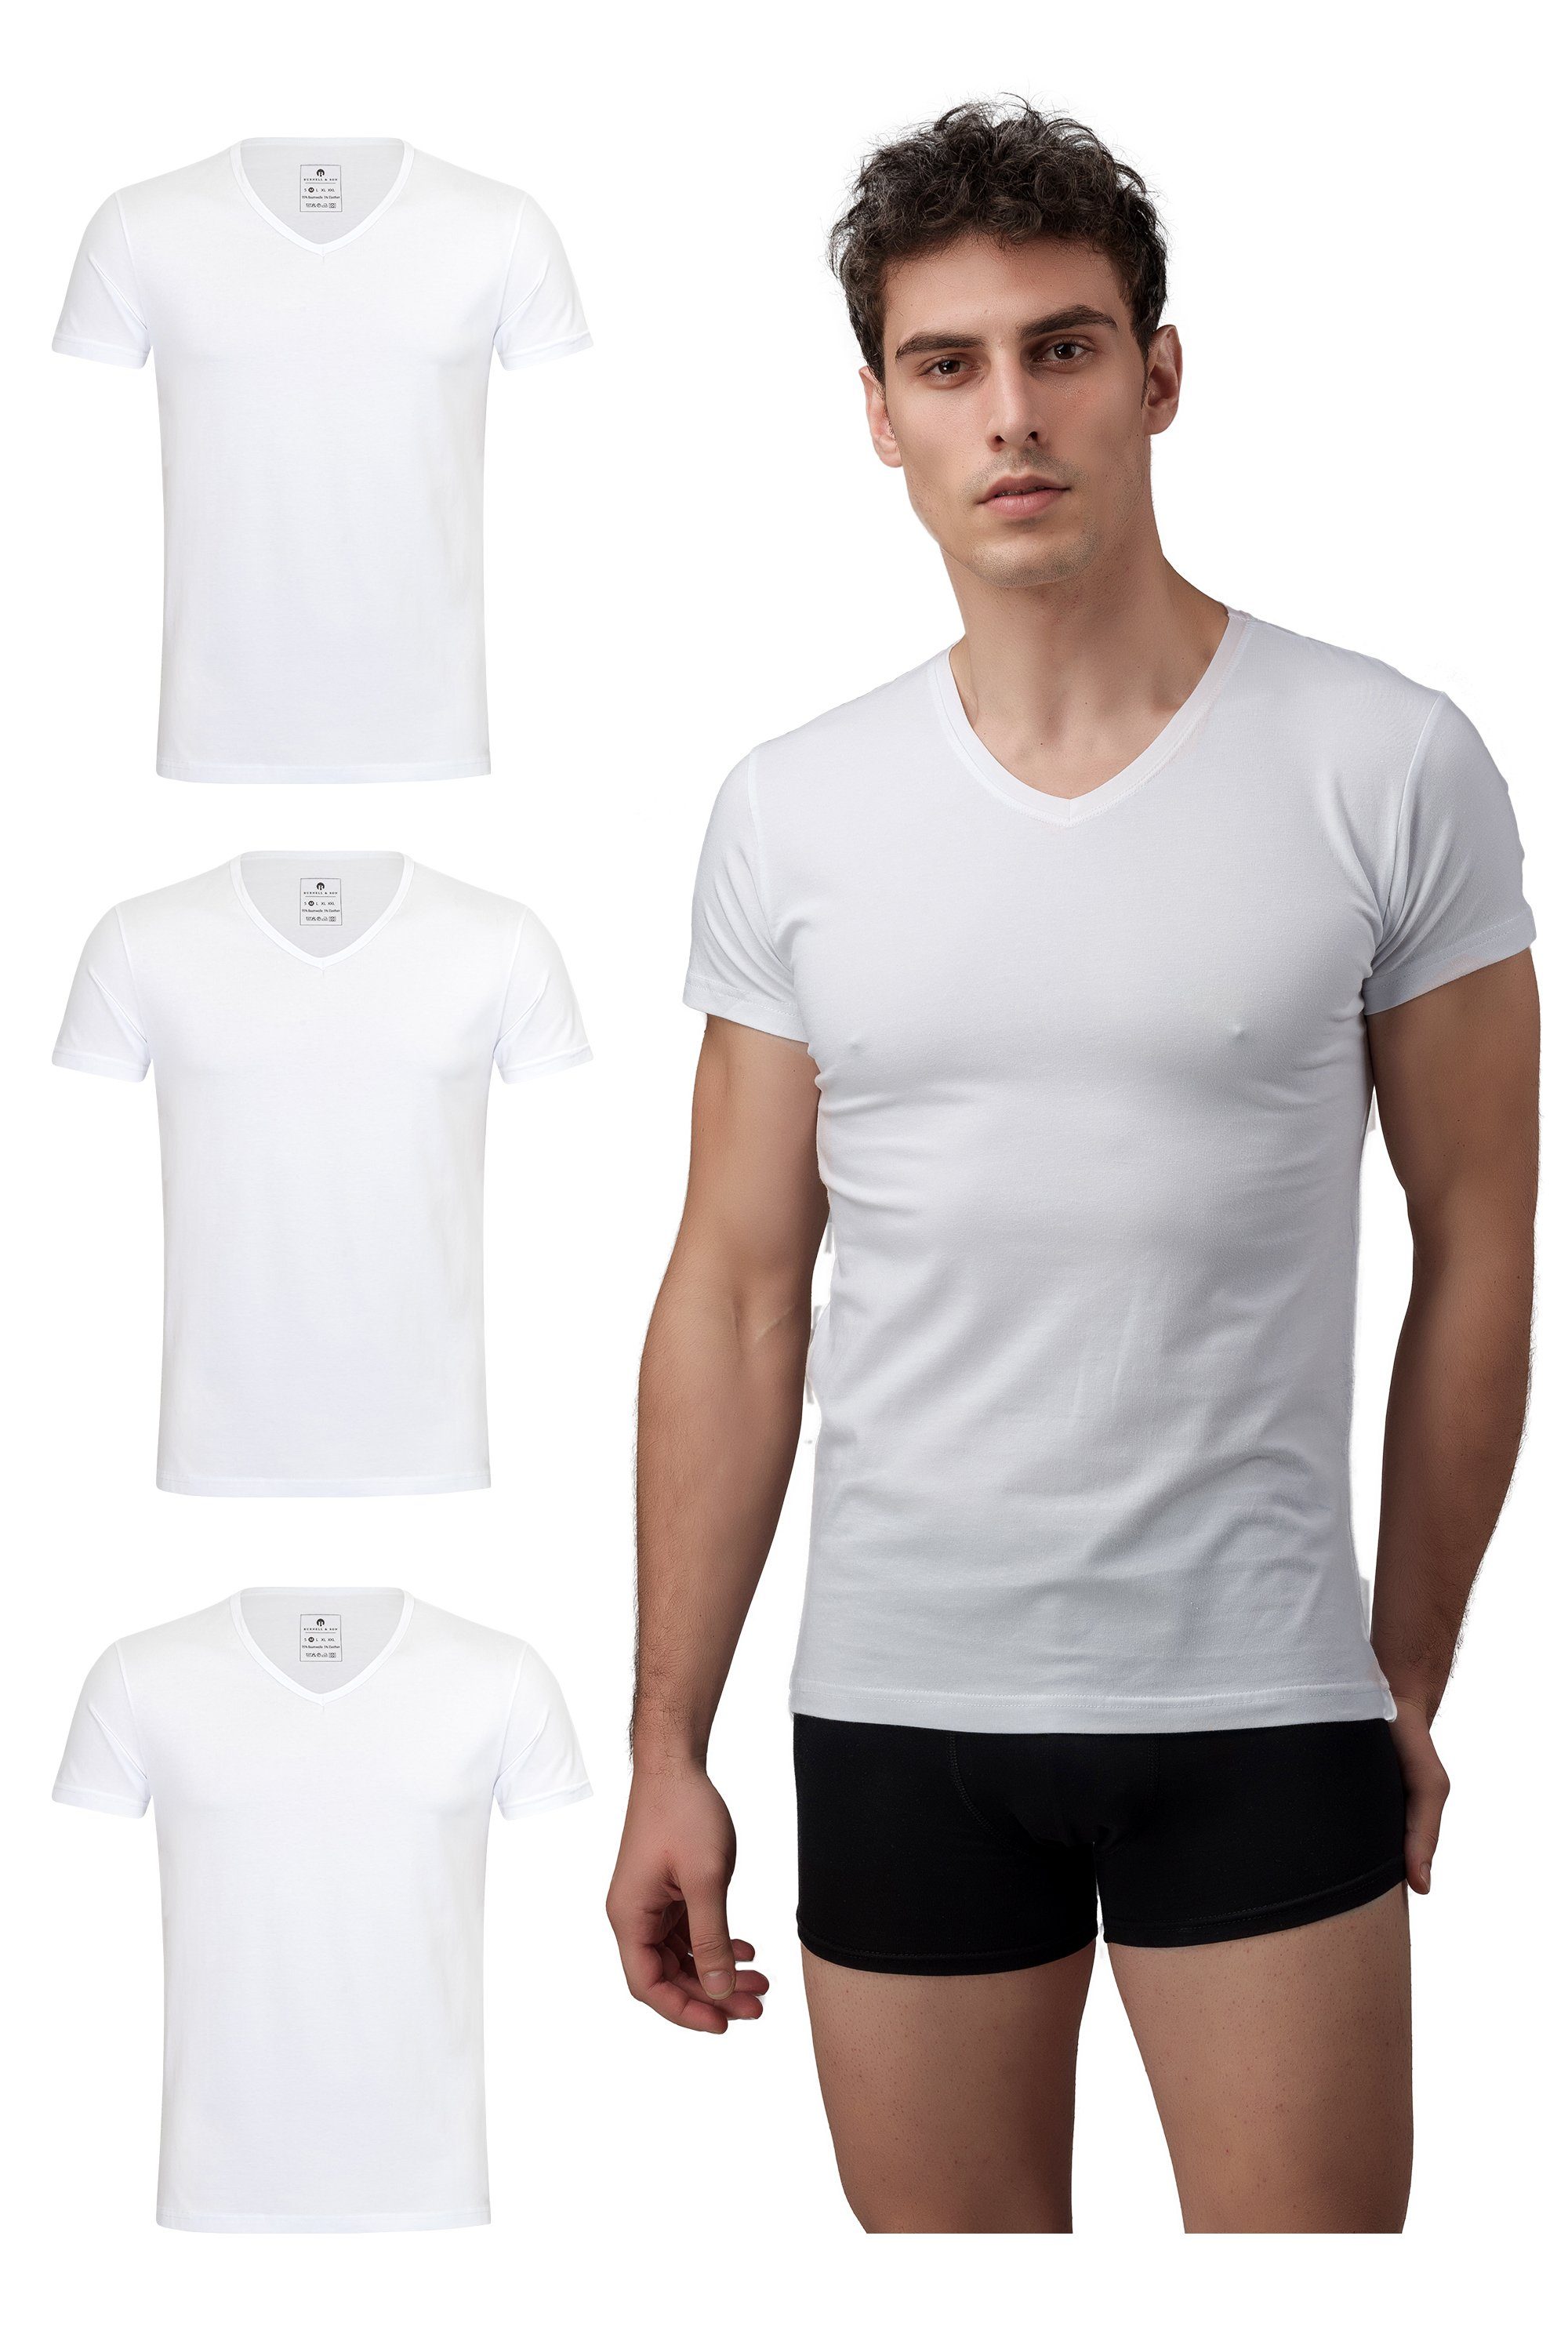 Wäsche/Bademode Unterhemden Burnell & Son Unterziehshirt Unterhemd T-Shirt mit Kurzarm und V-Ausschnitt für Herren aus Baumwolle